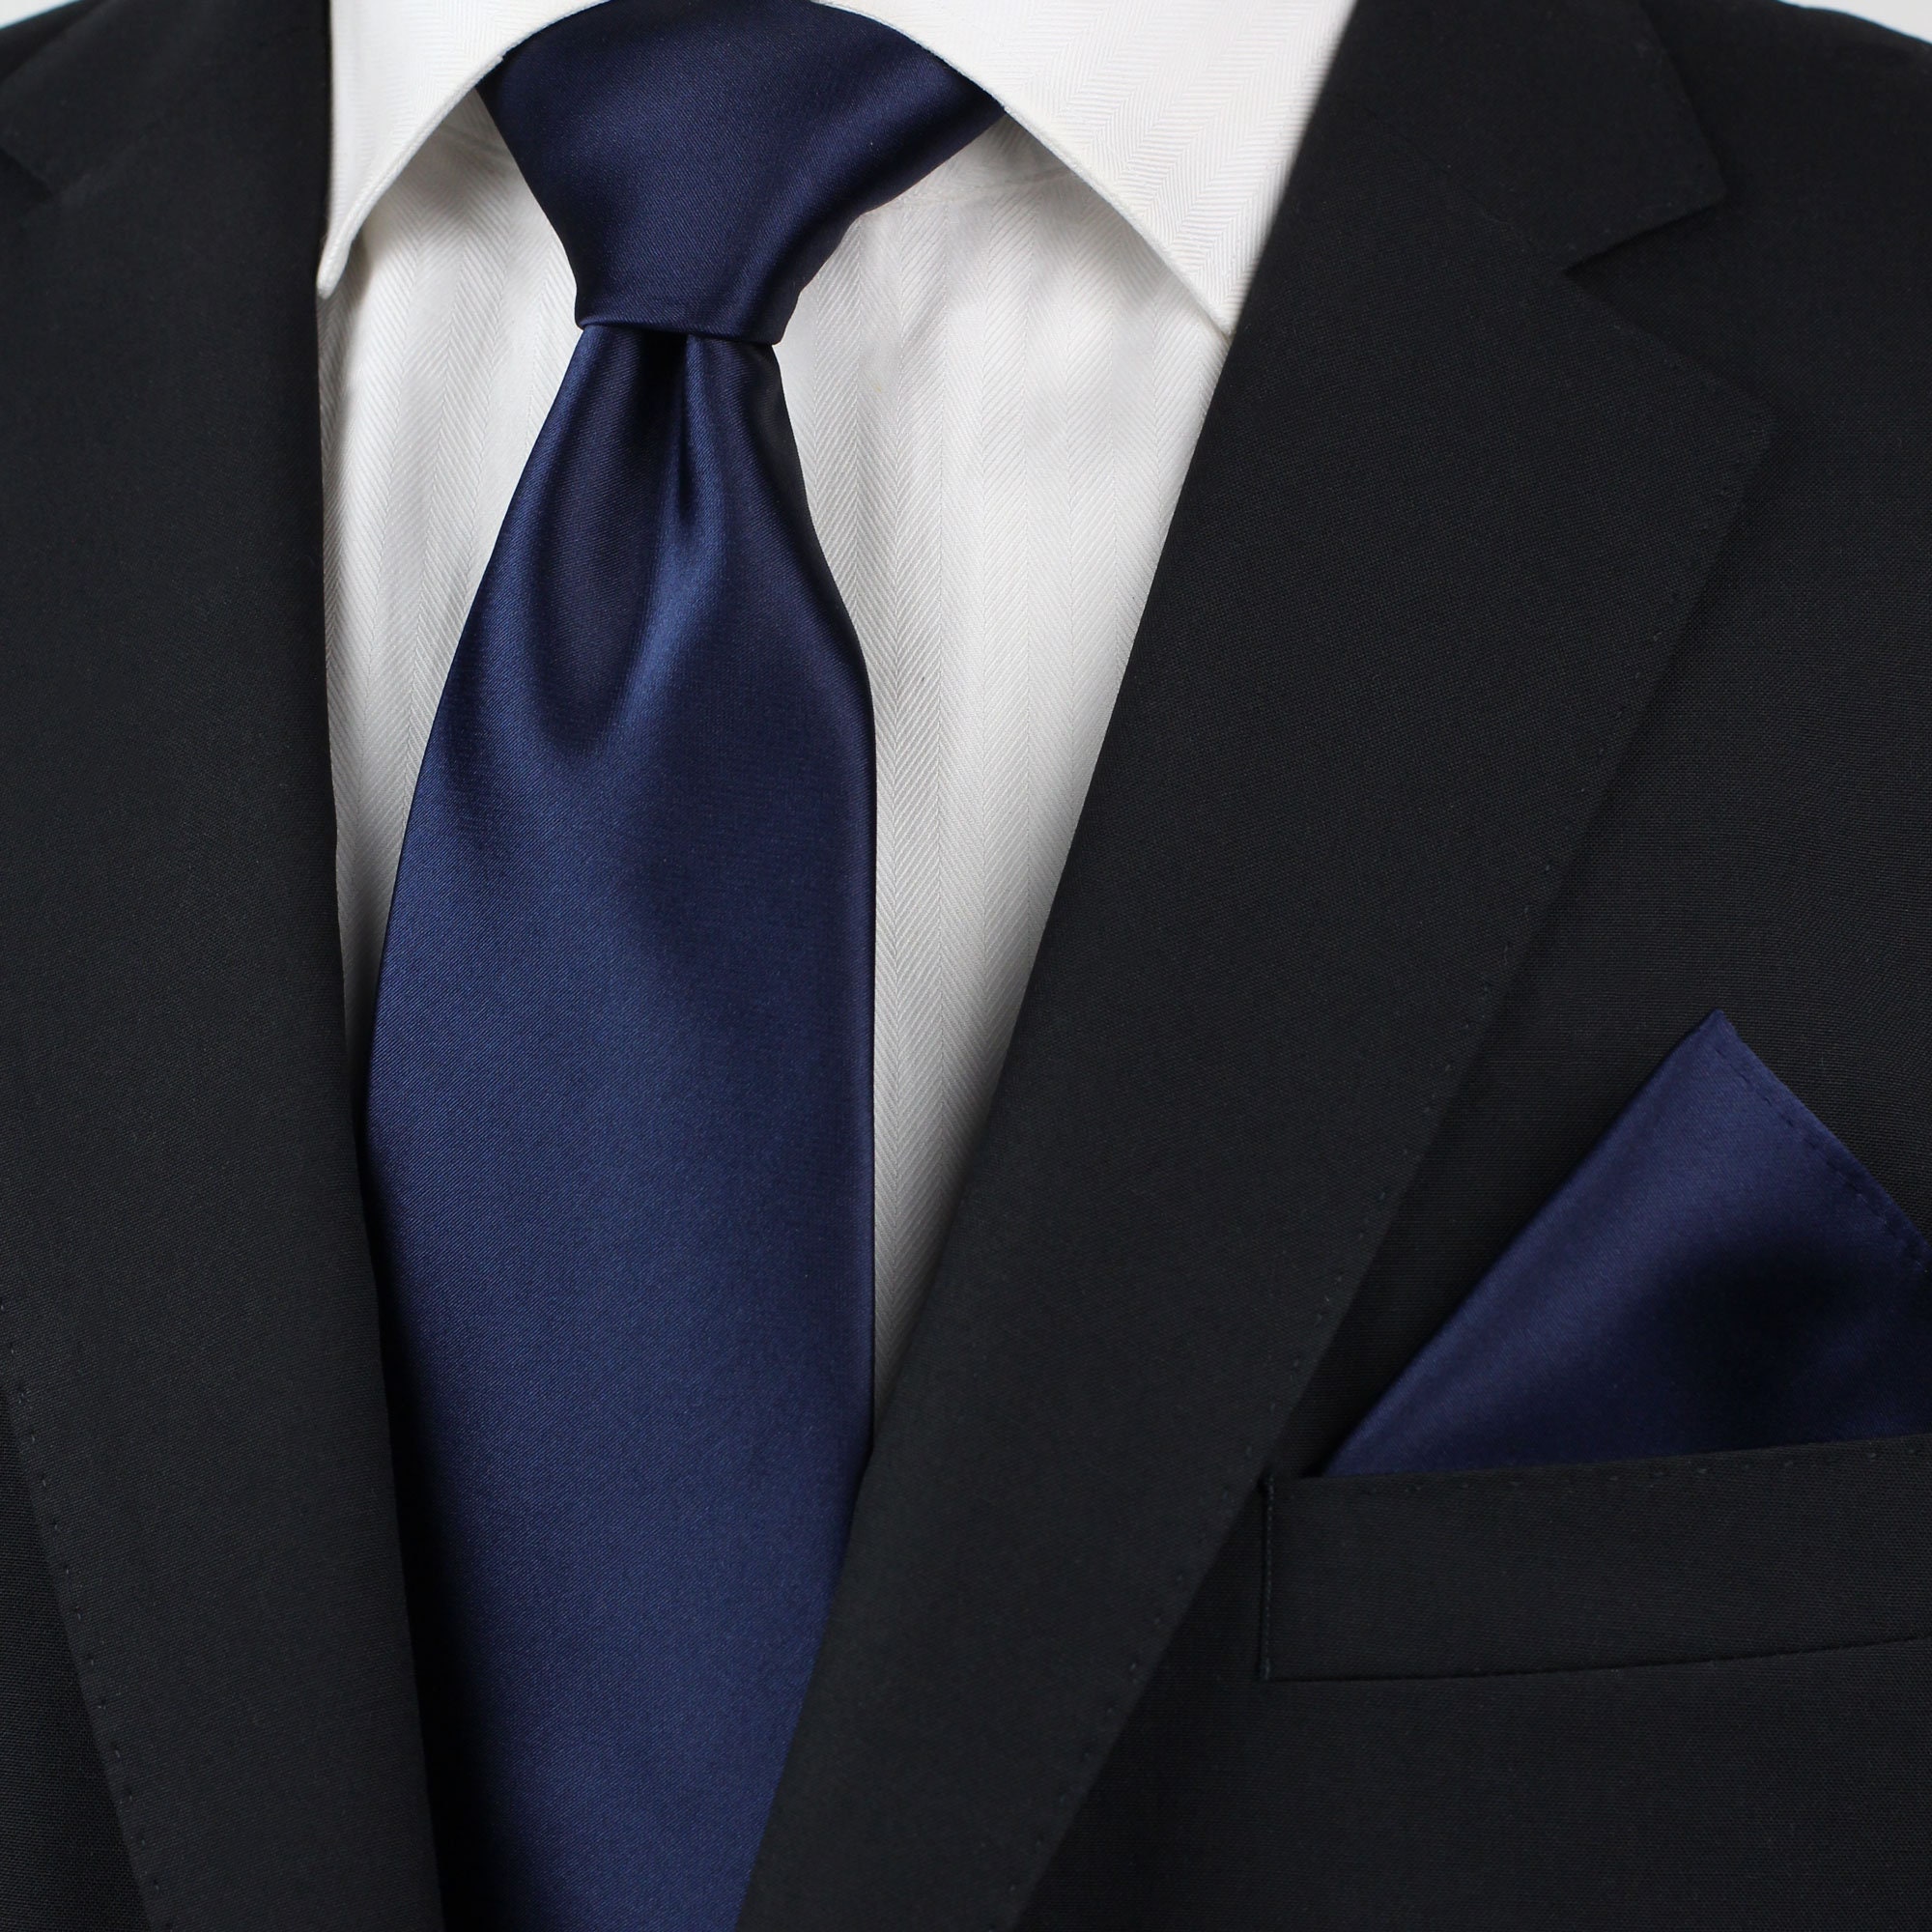 Navy Blue Premium Solid Color Necktie